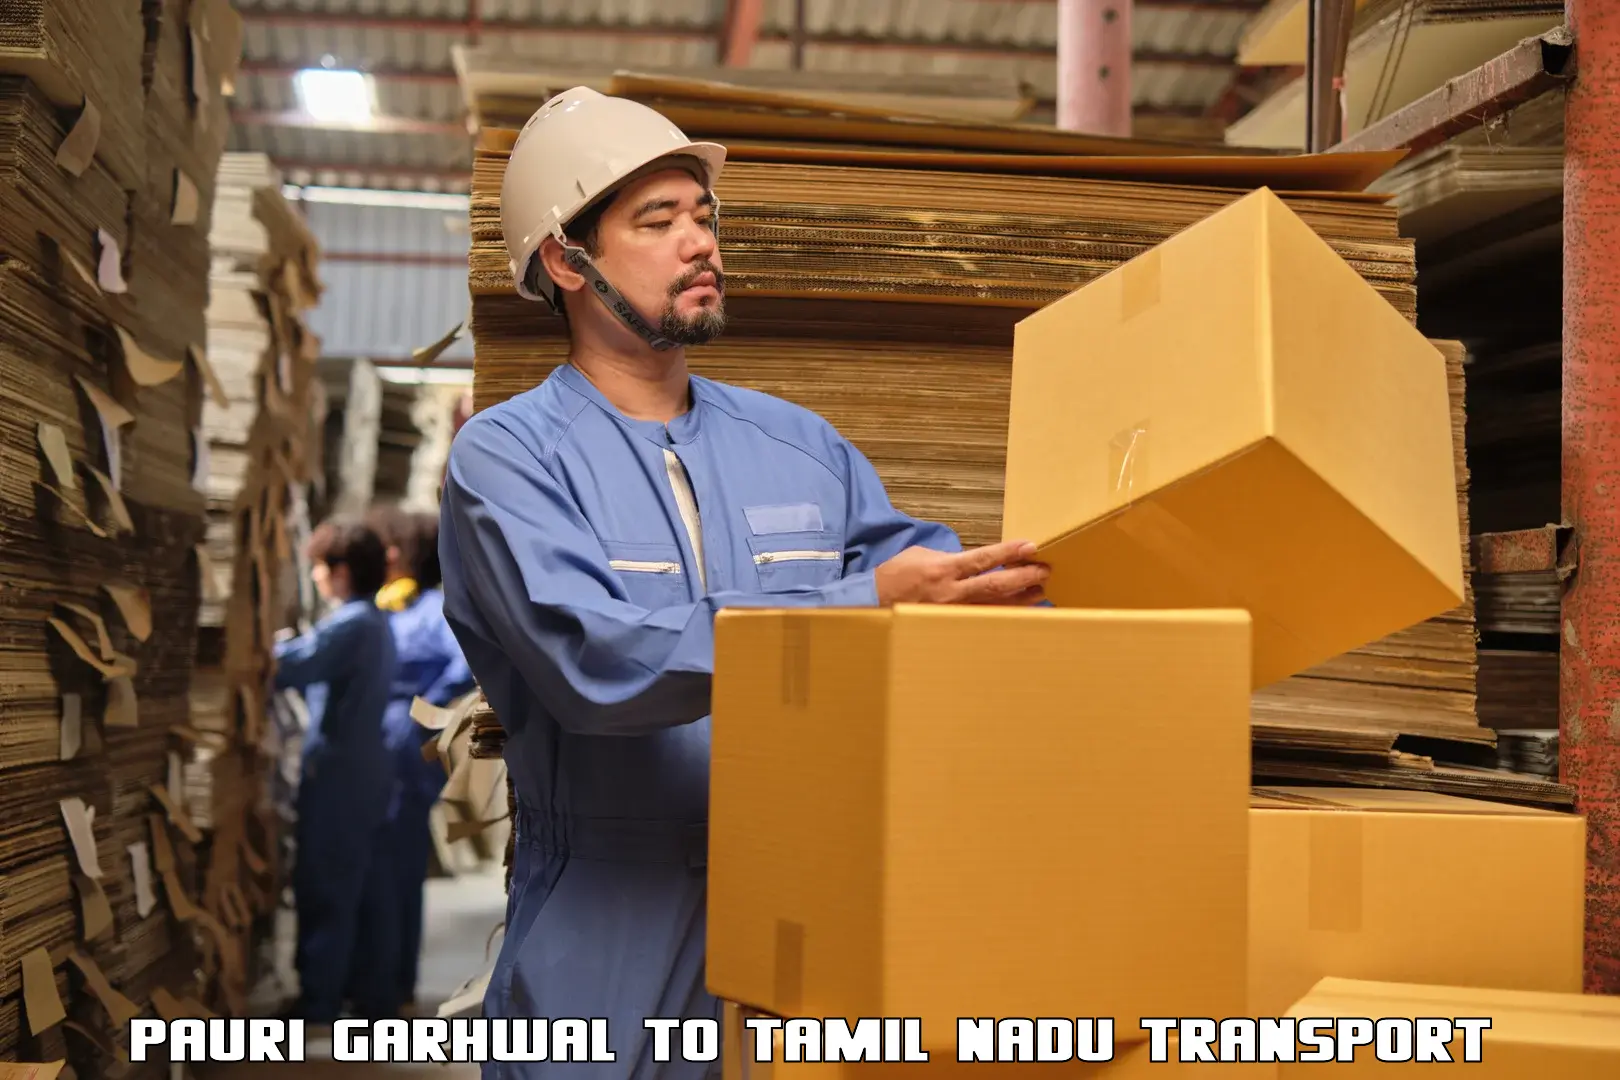 Commercial transport service Pauri Garhwal to Tiruturaipundi